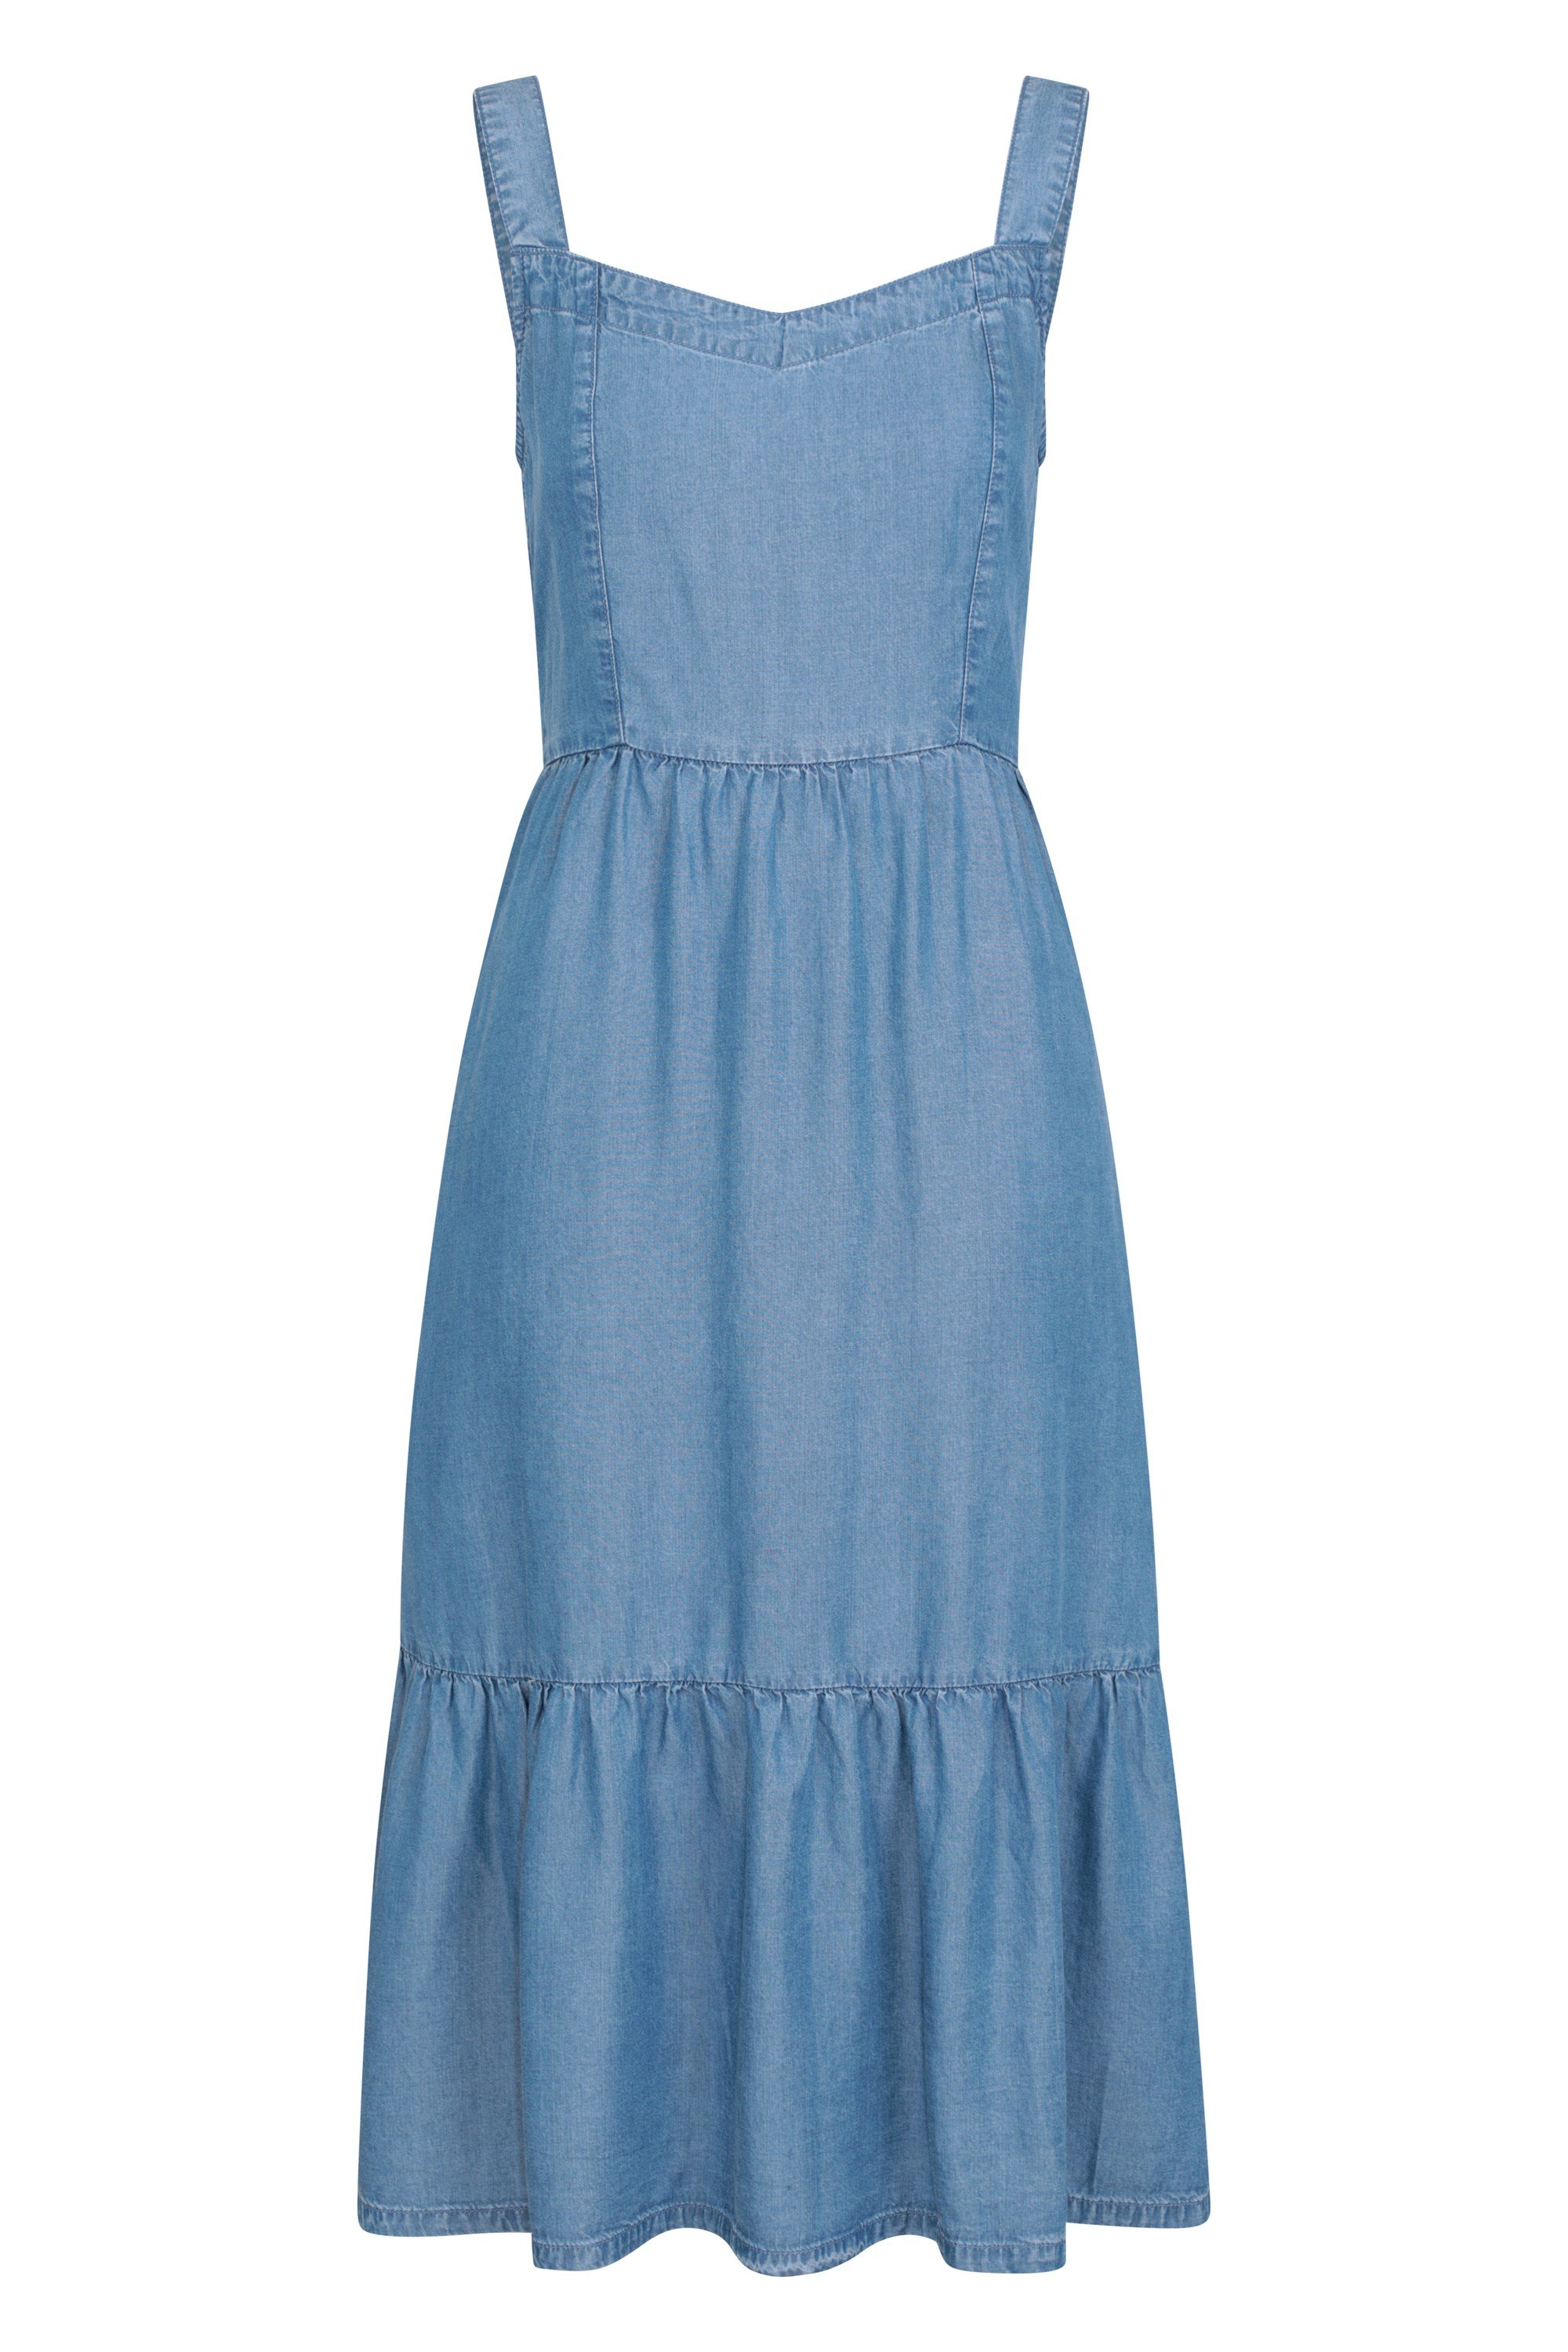 Zante Womens Chambray Tiered Midi Dress - Blue